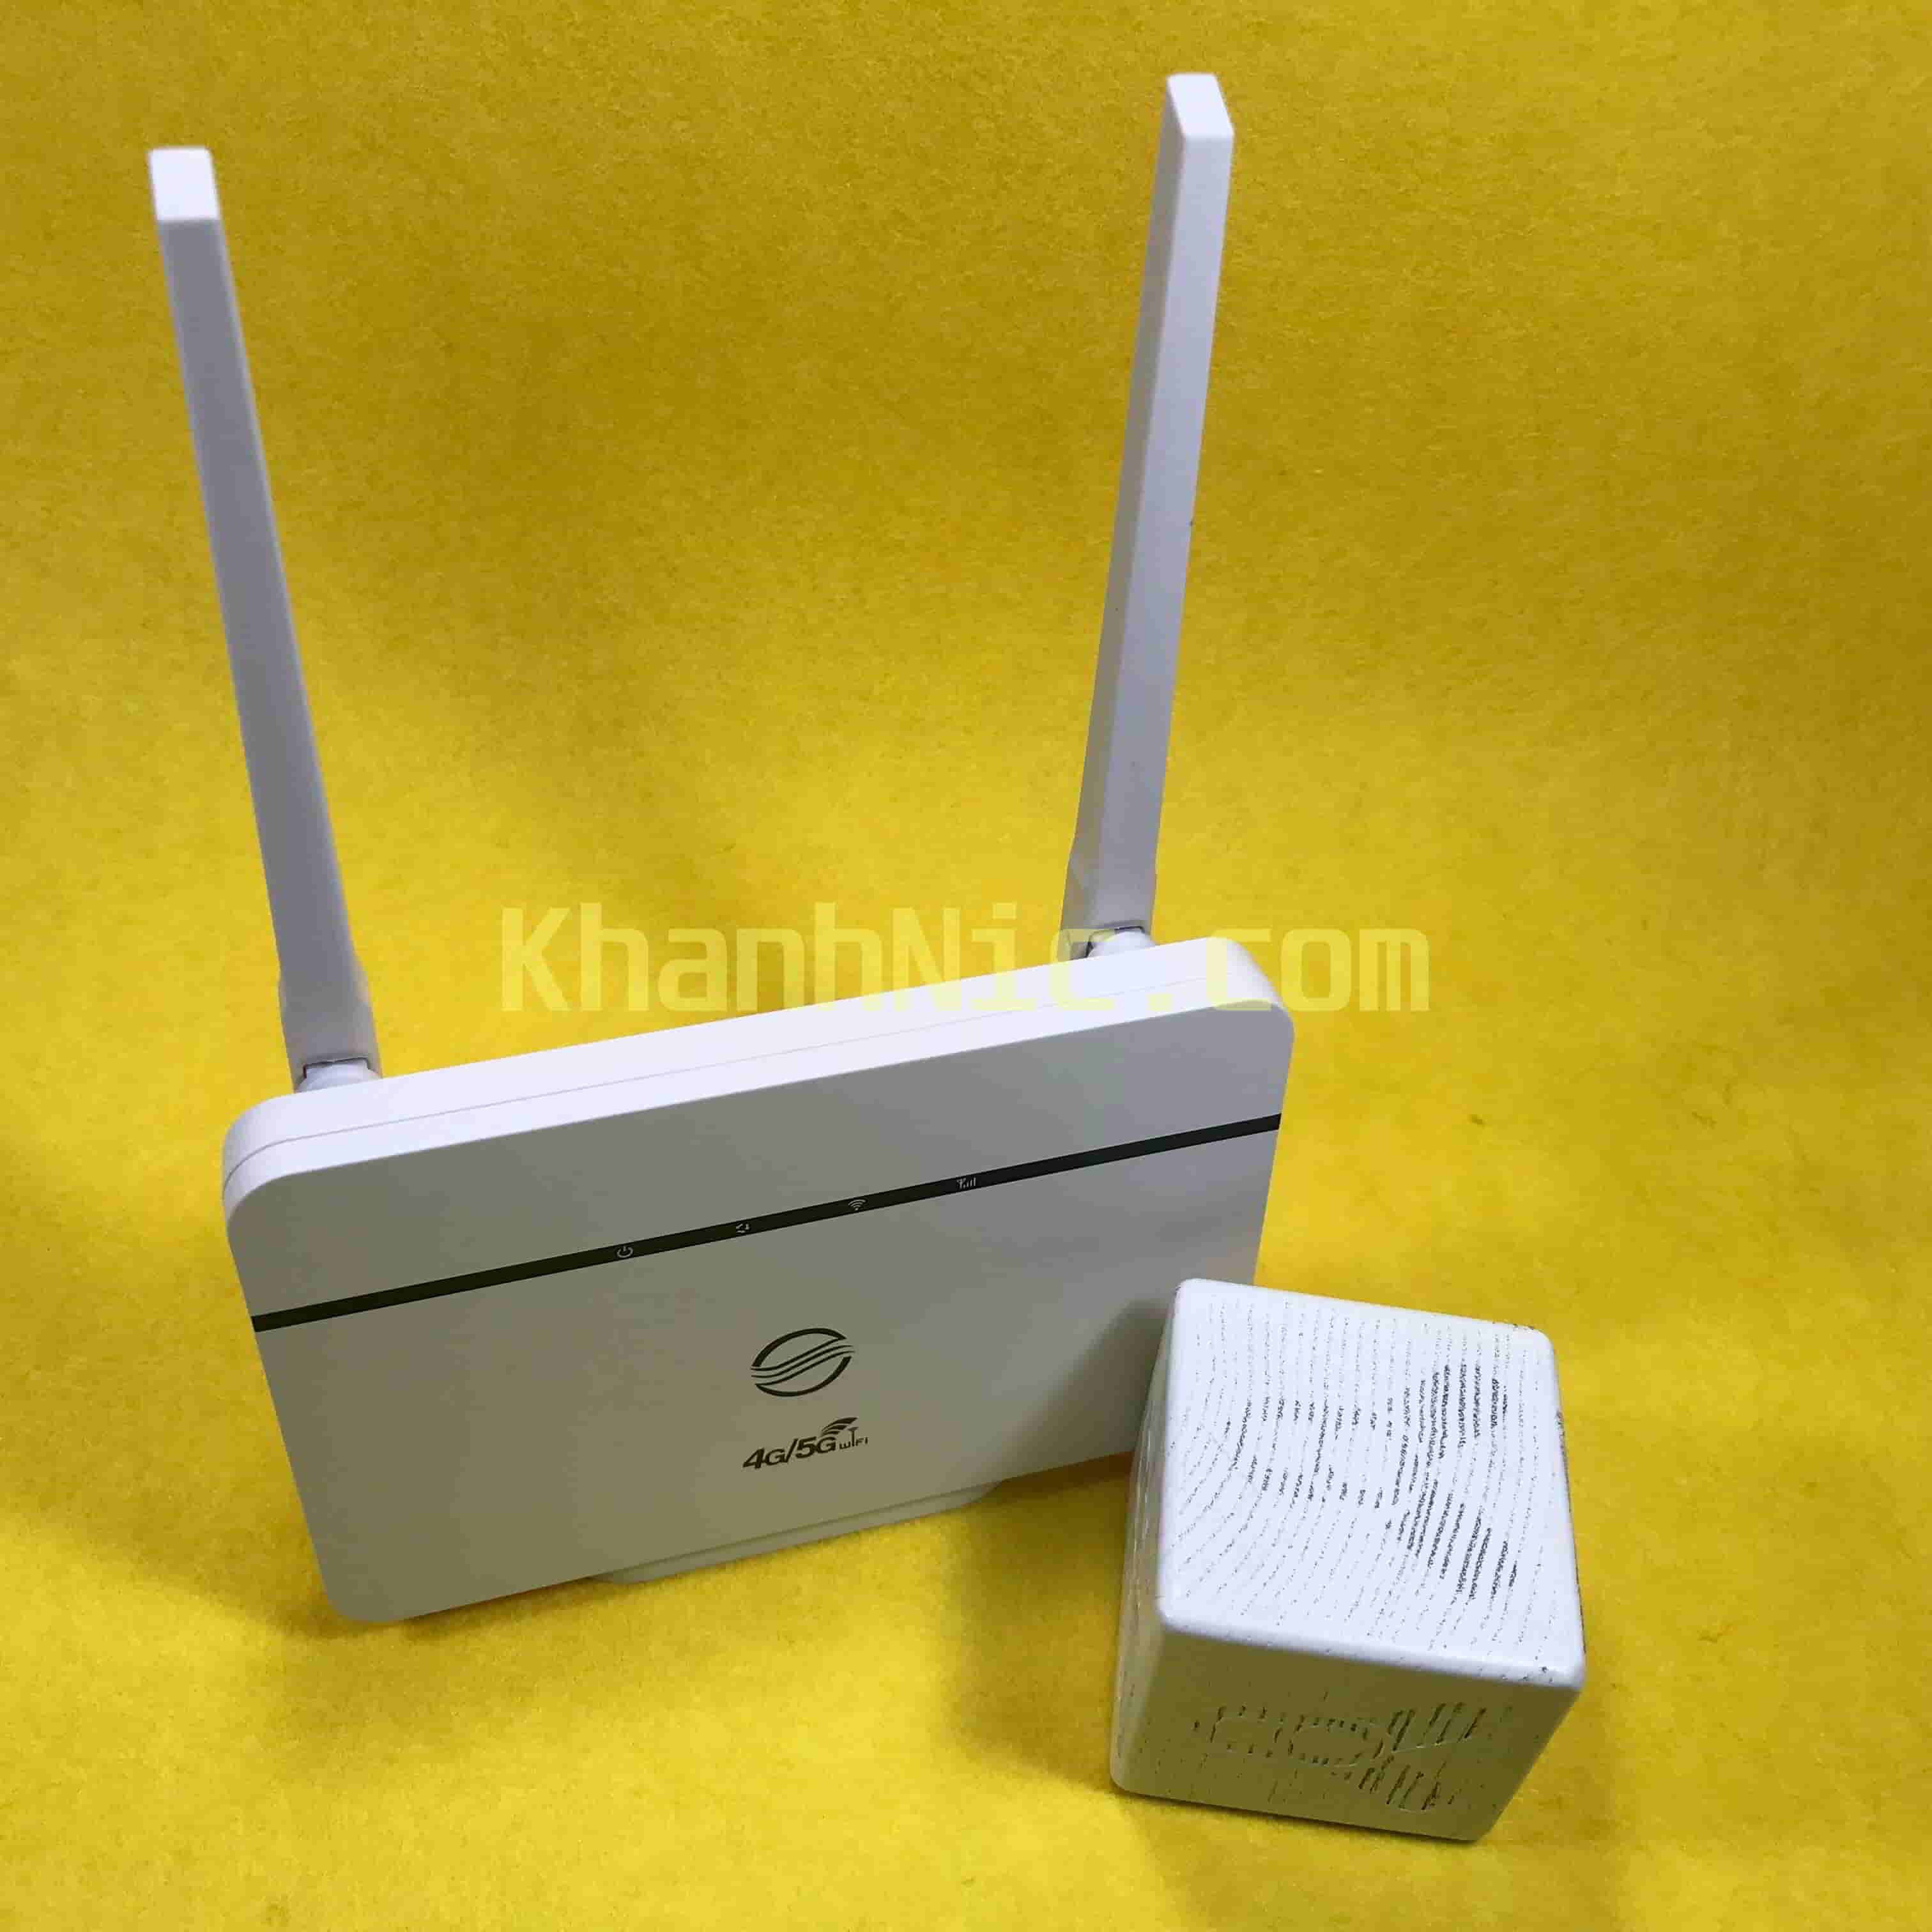 Cục phát wifi 4G LTE có cổng Lan CPE RS860 - 32 NGƯỜI DÙNG CÙNG LÚC